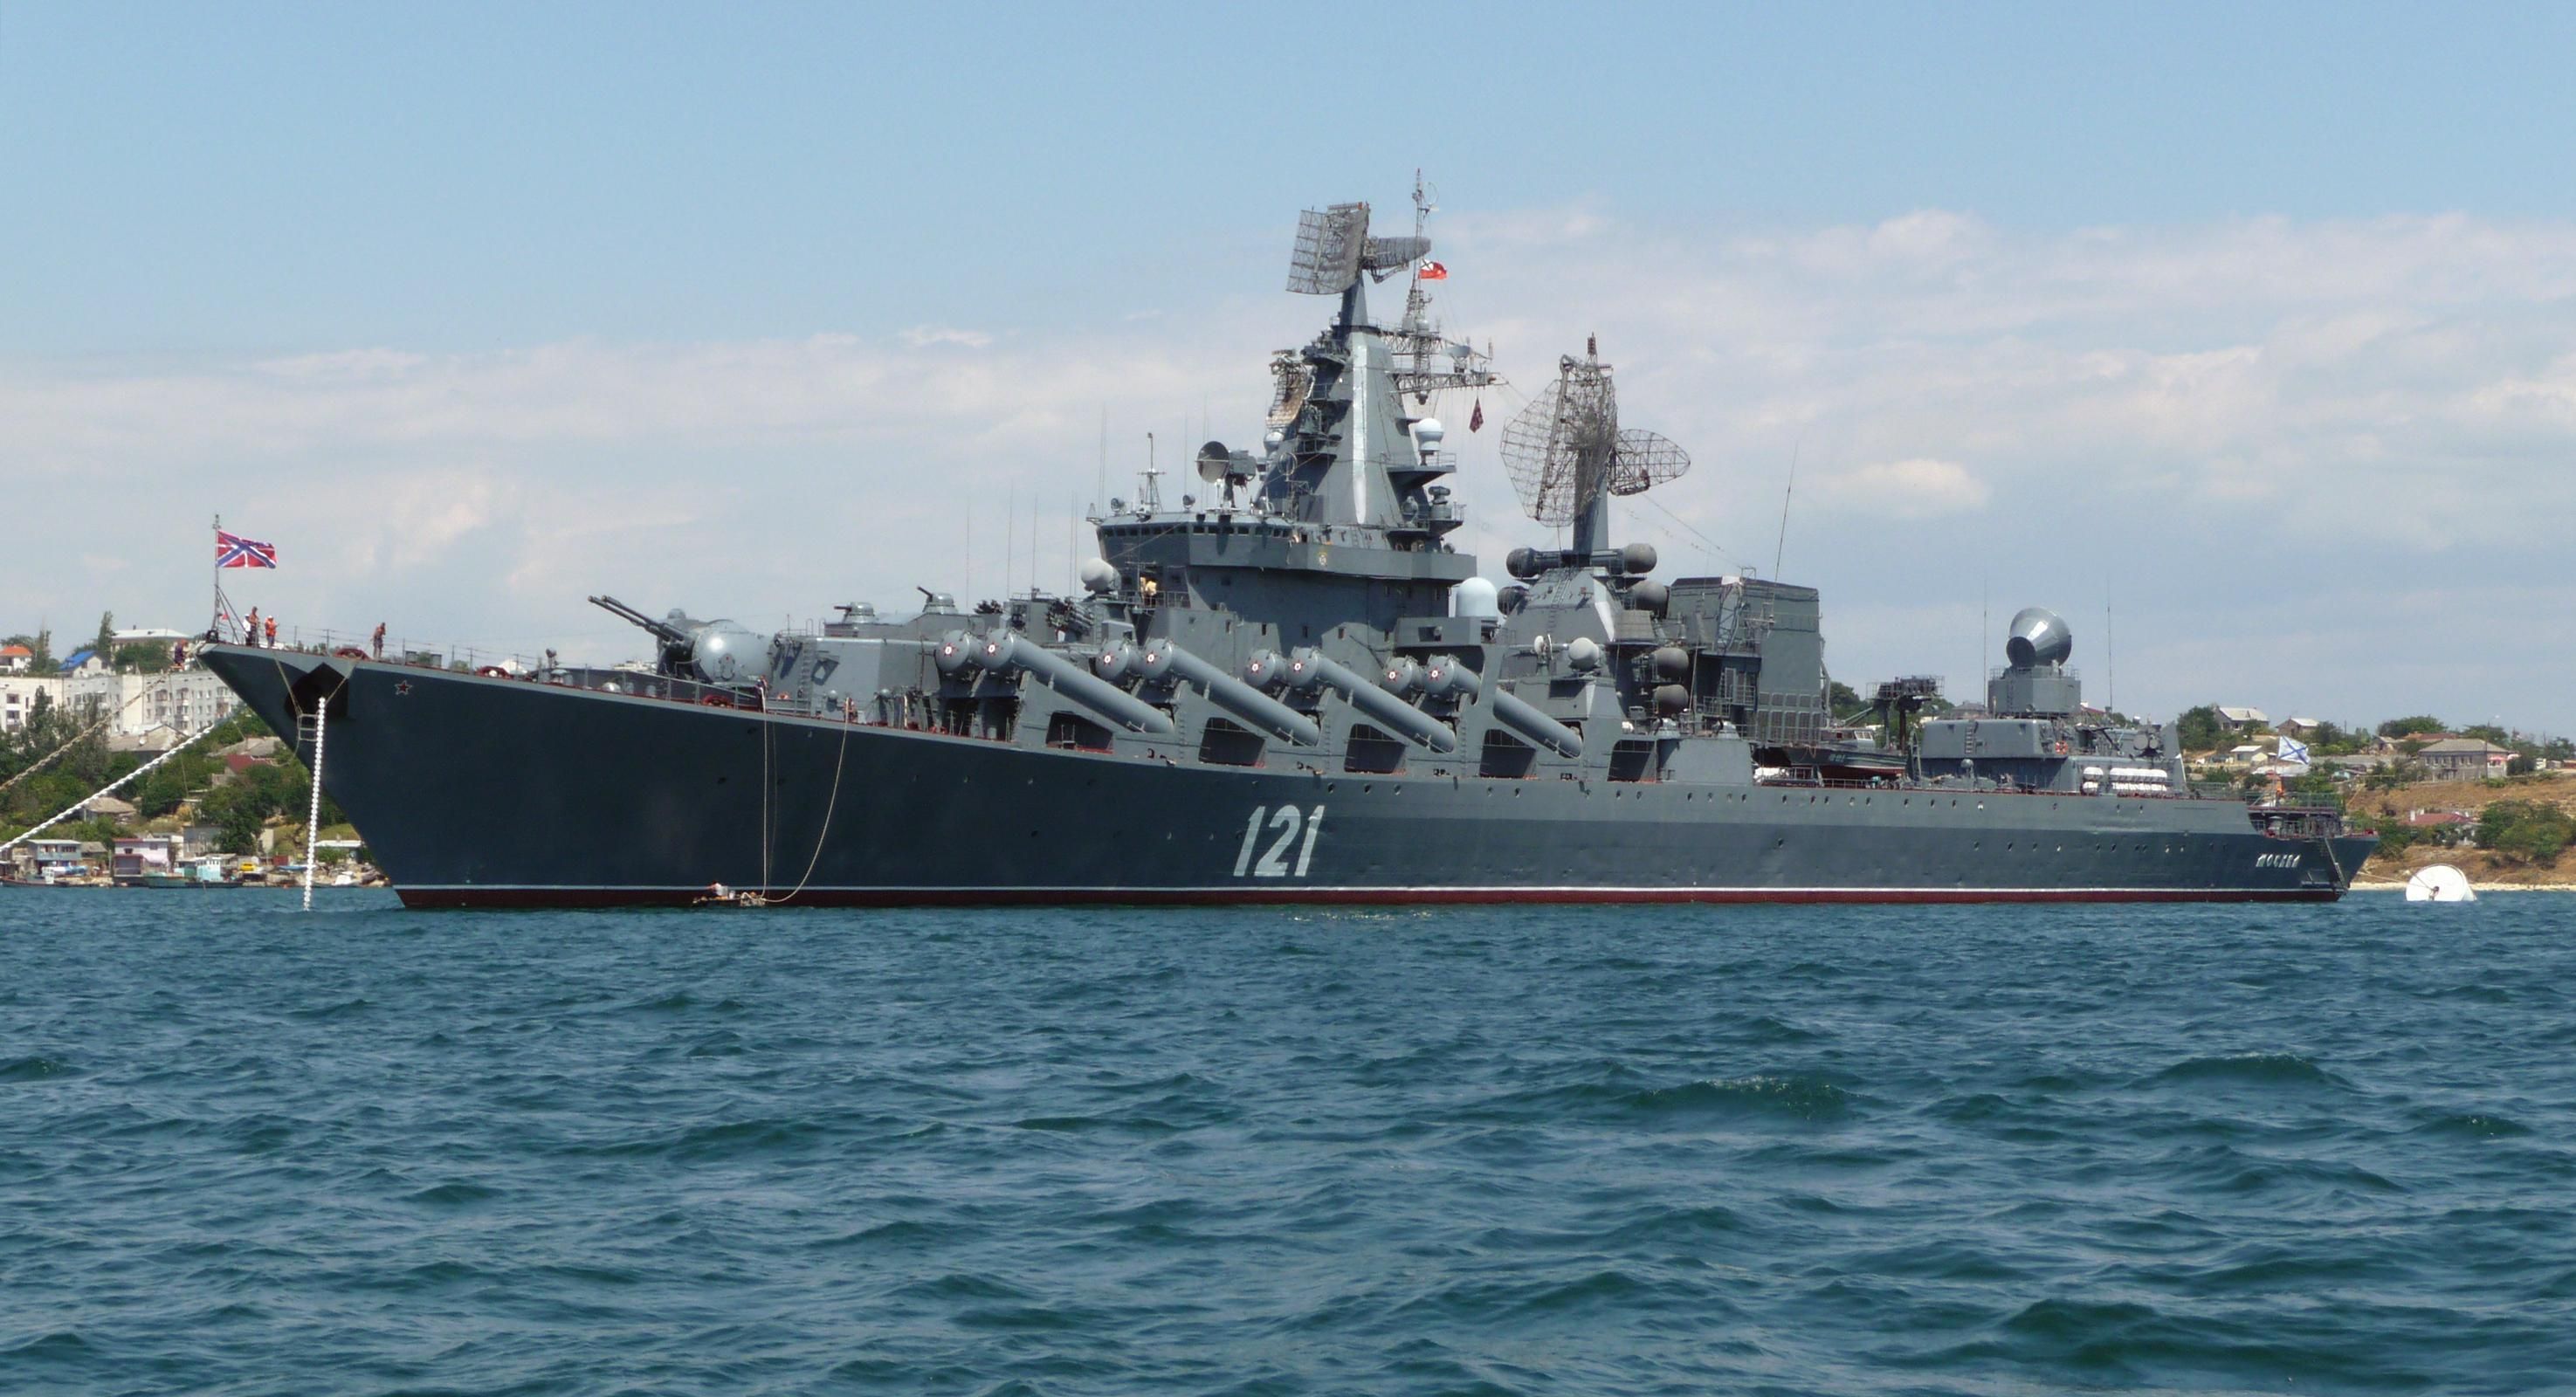 Флагман "Москва": докази, що доводять причетність російського флоту до захоплення Криму